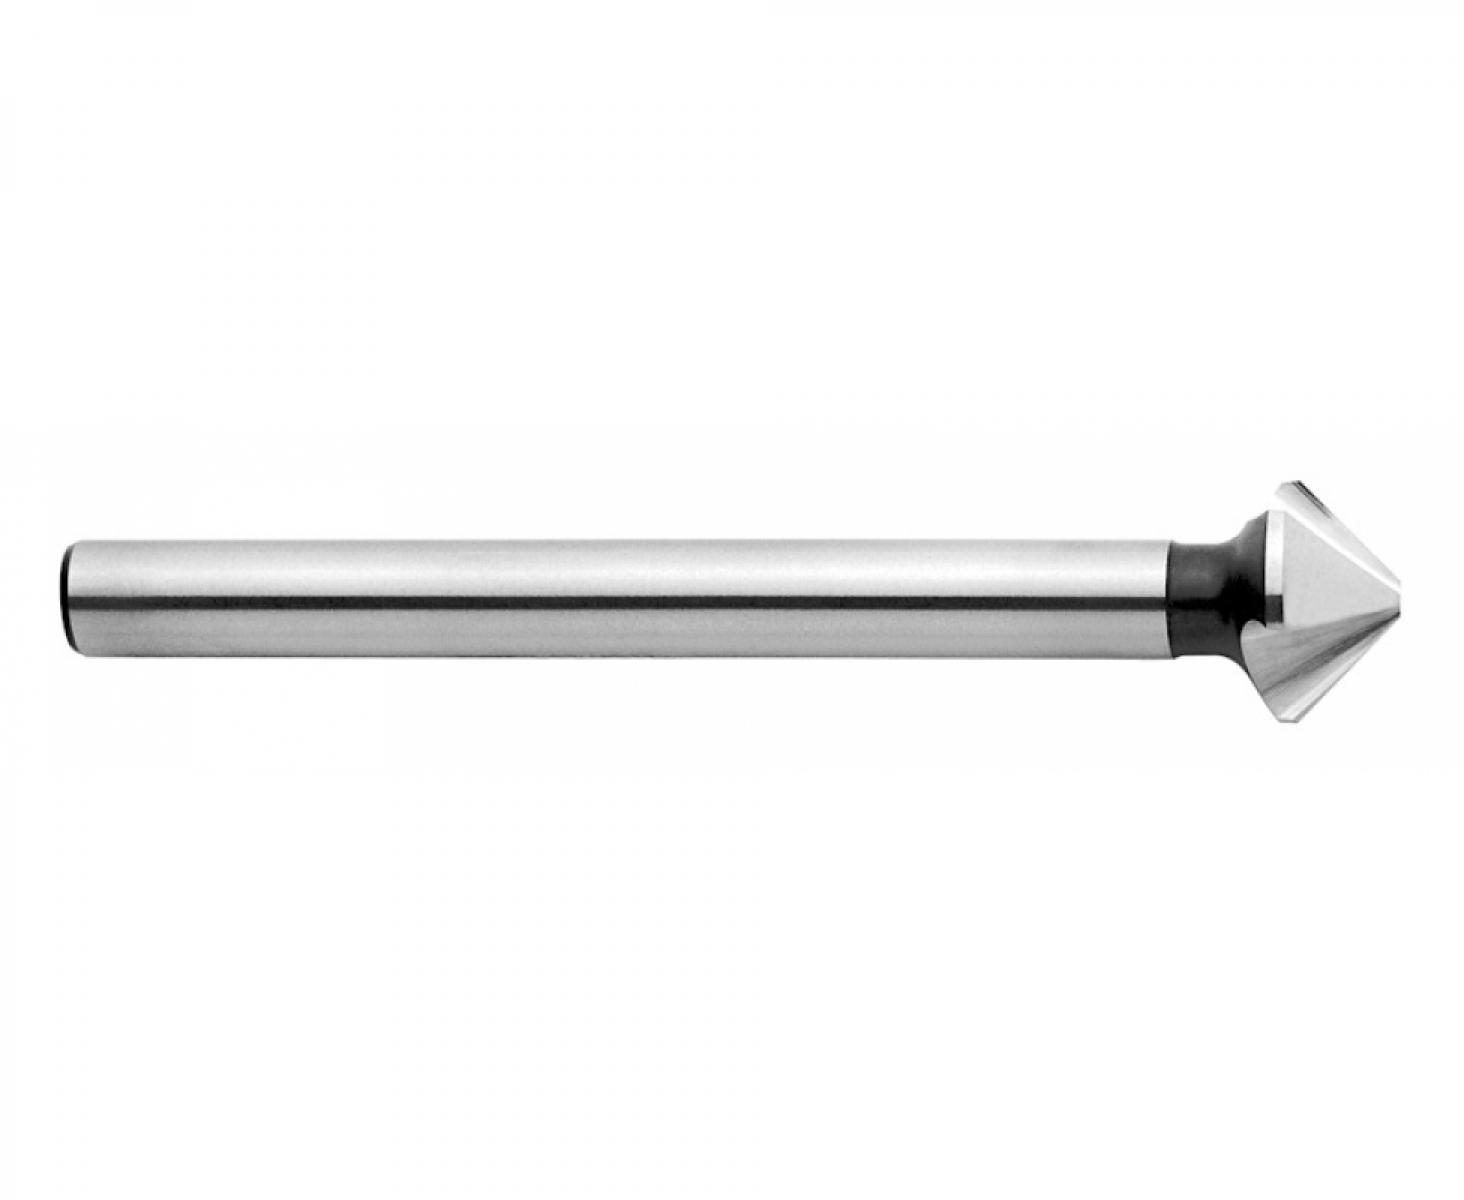 Зенкер конический 90° 8,3 мм DIN 335 C Exact GQ-50702 3 режущих кромки цилиндрический хвостовик длинный